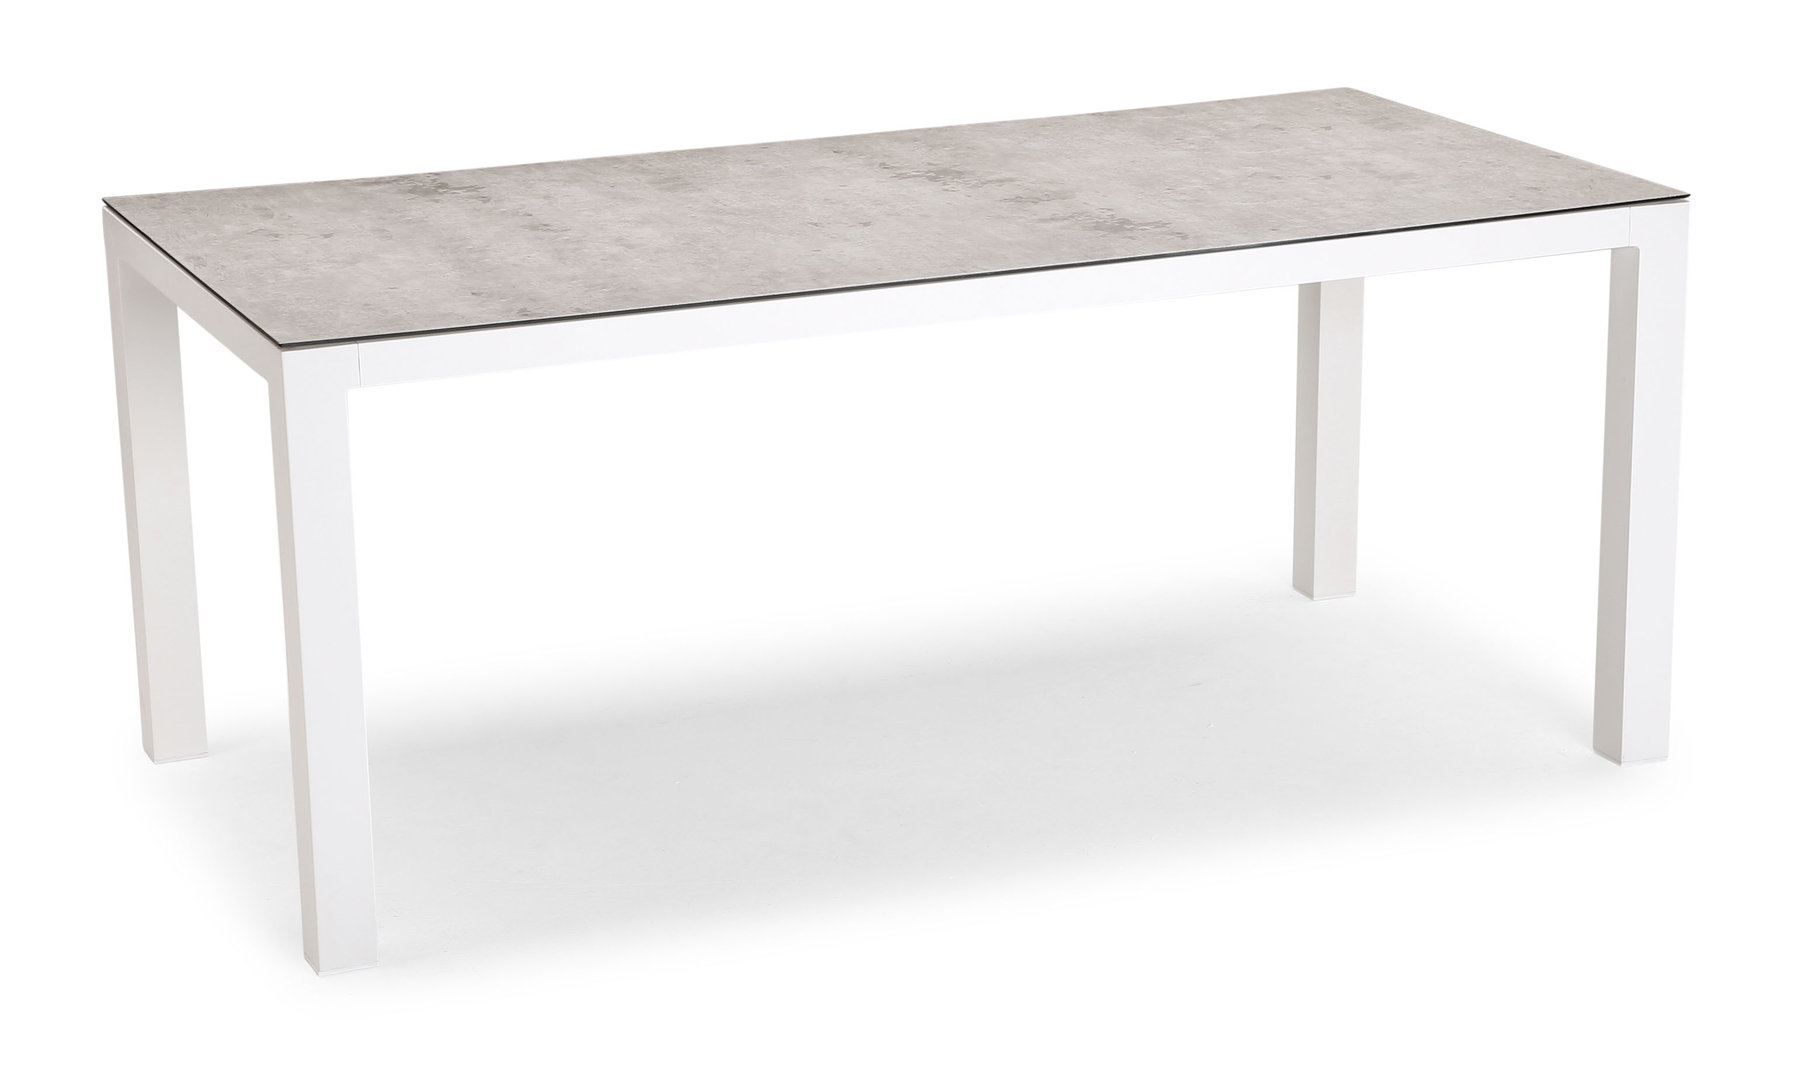 Tisch Houston 210x90 cm, - weiß/silber ebh GmbH Betriebseinrichtungen